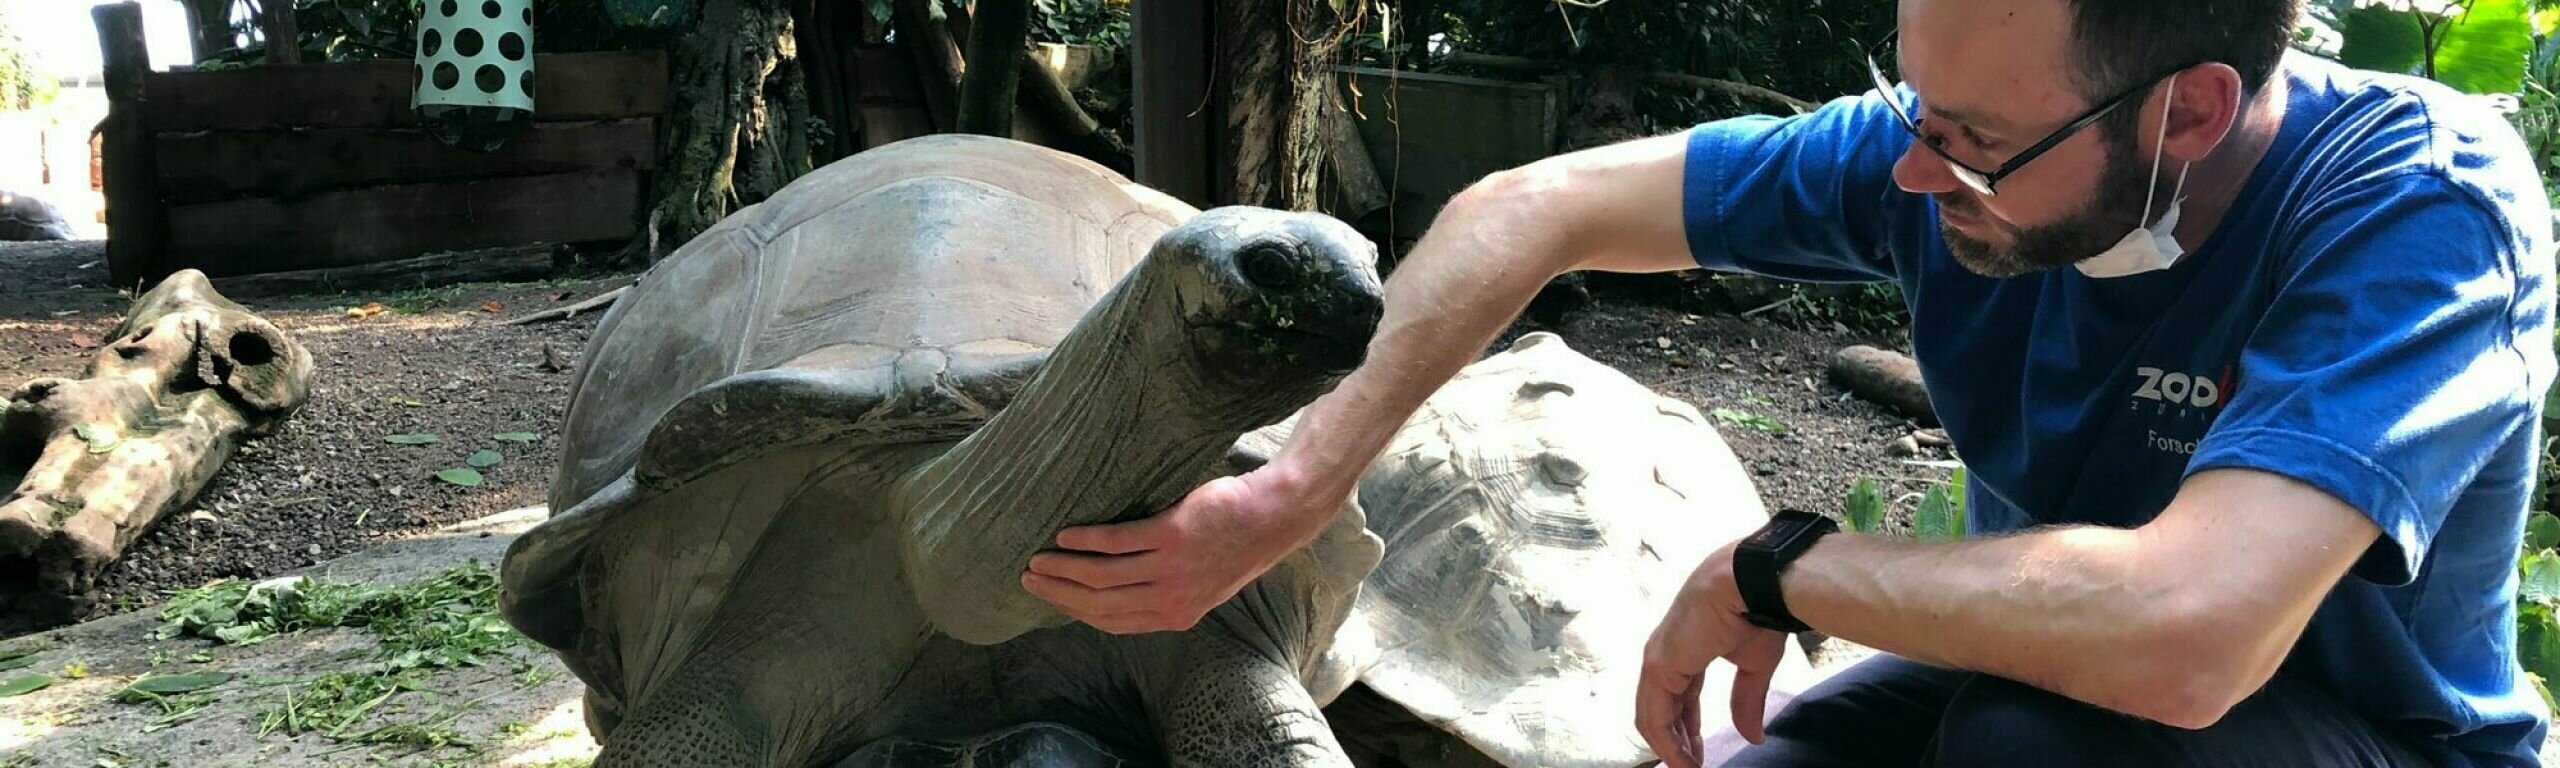 L'autore Andreas Eggimann accarezza una tartaruga gigante allo zoo.